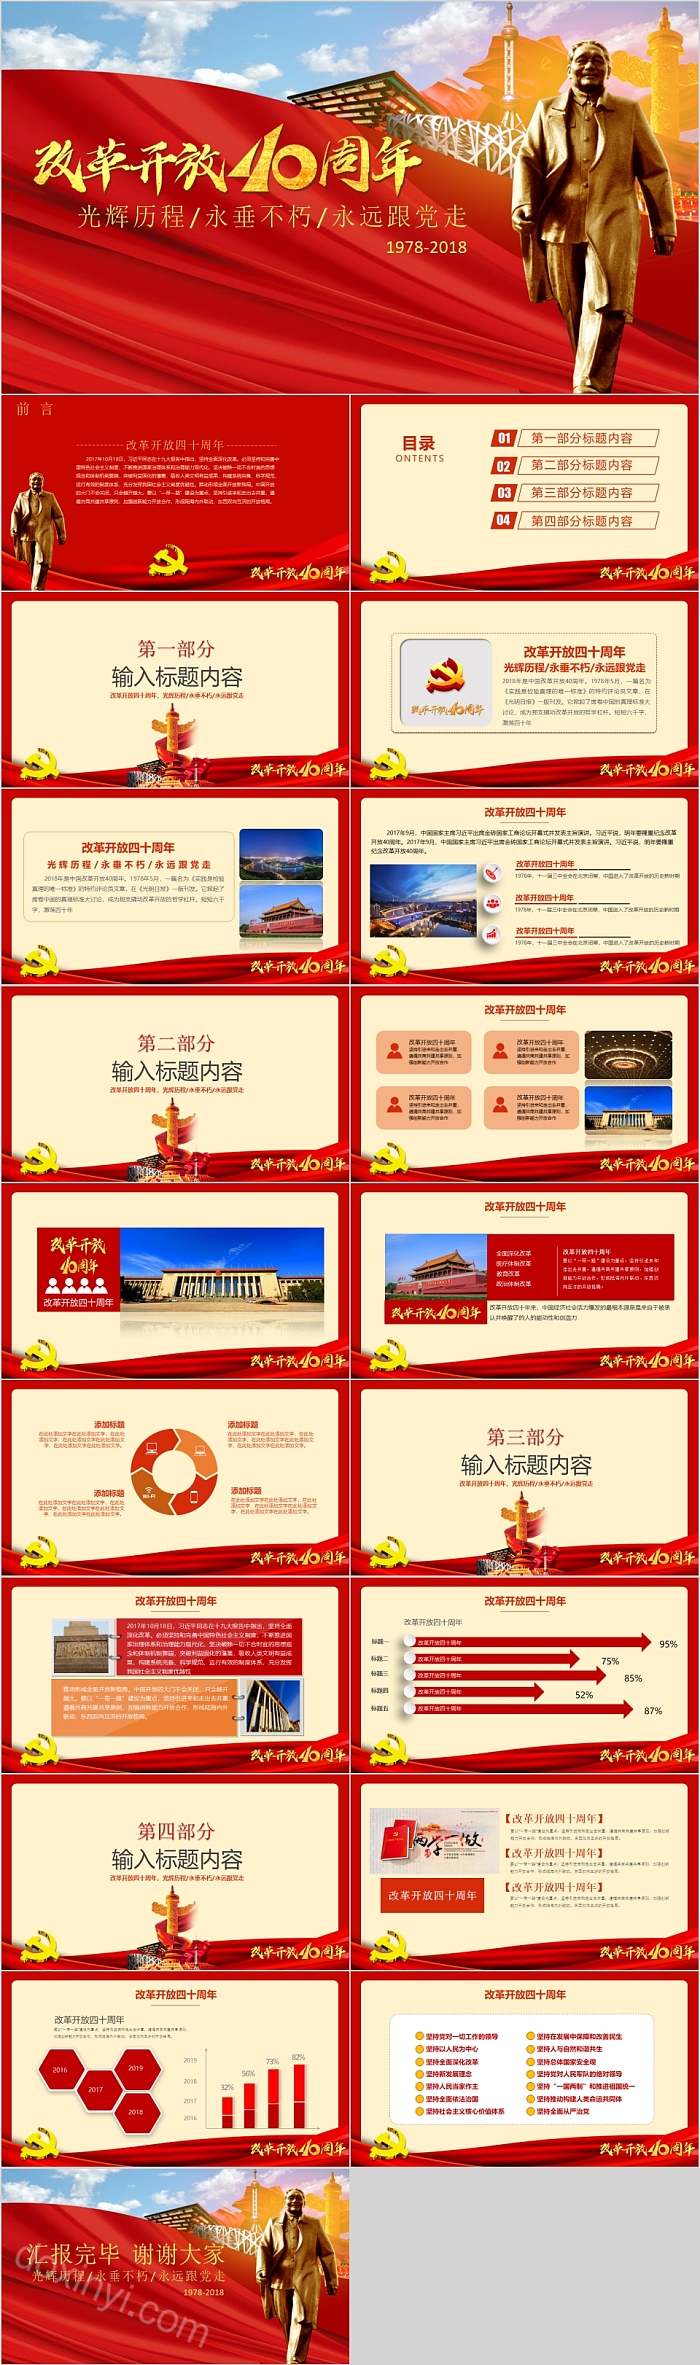 改革开放周年庆祝新中国成立